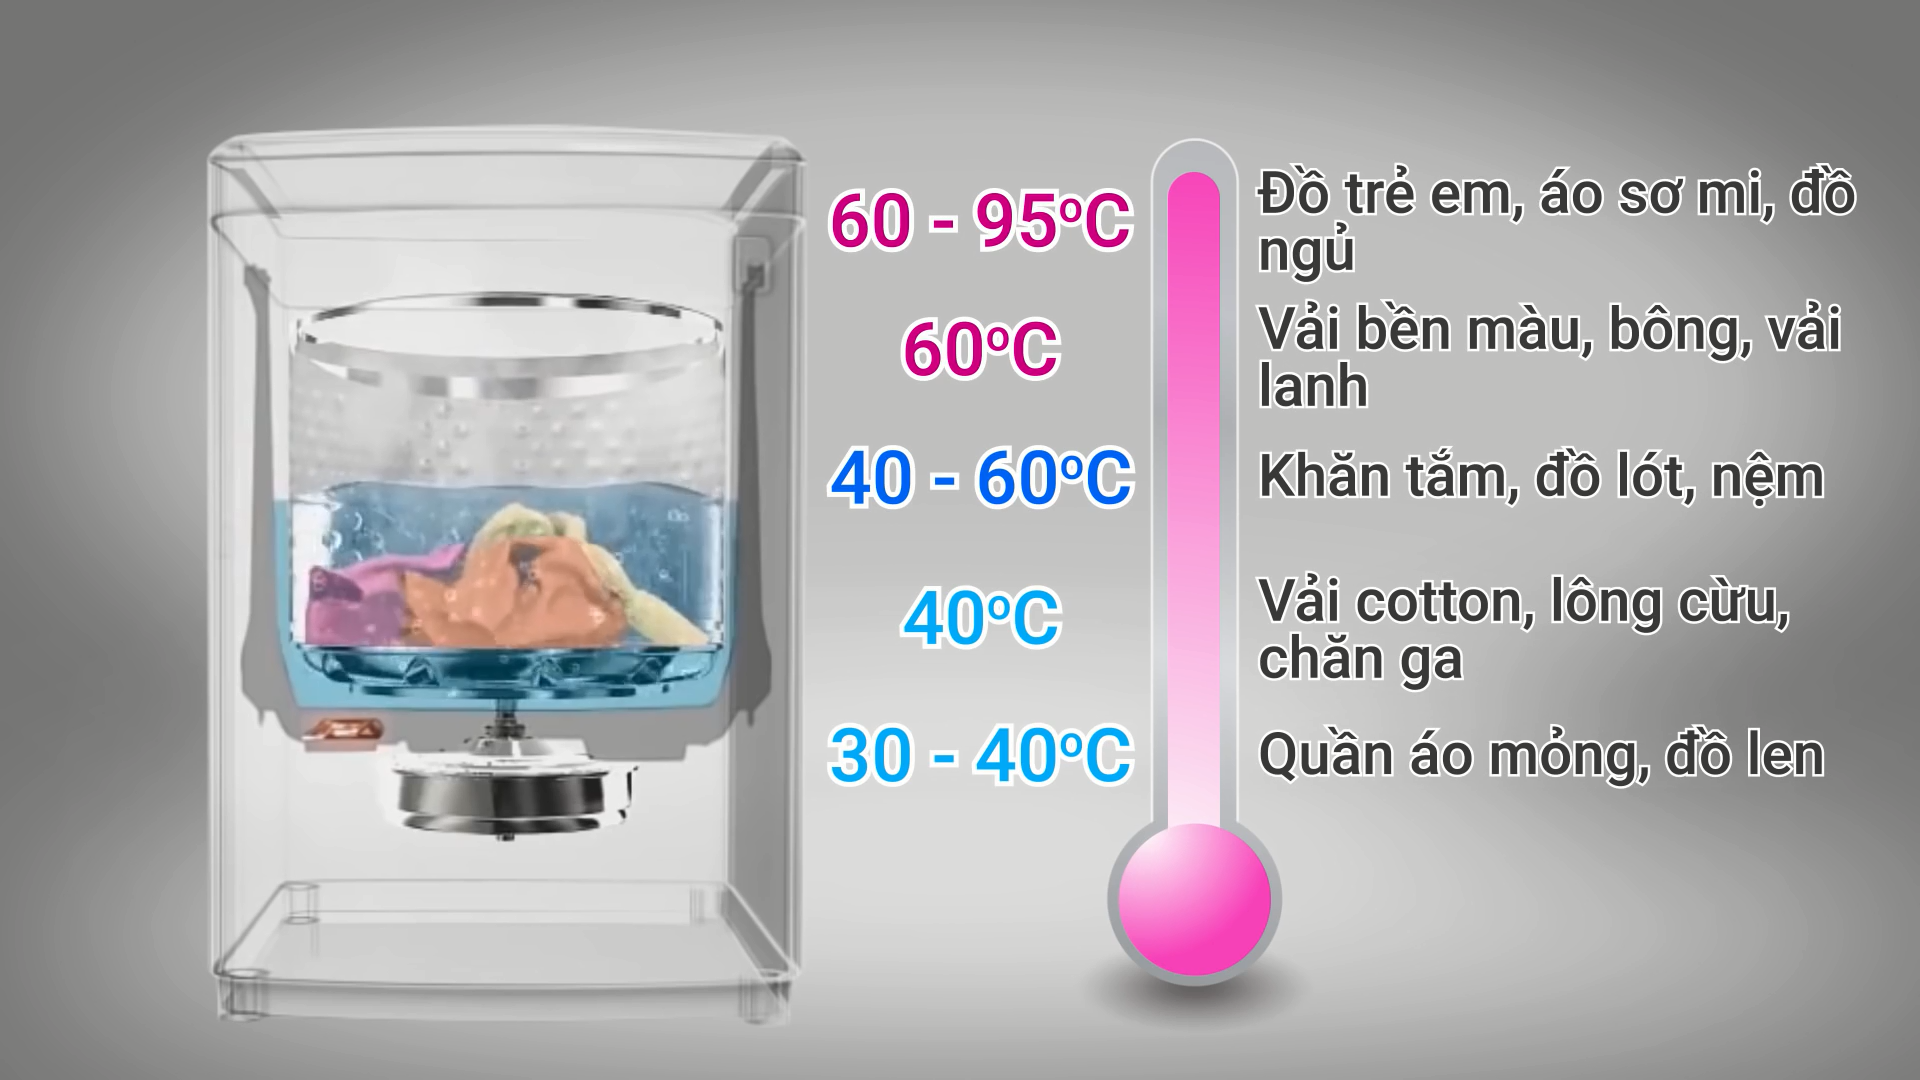 Giặt nước nóng bao nhiêu độ là tốt nhất?